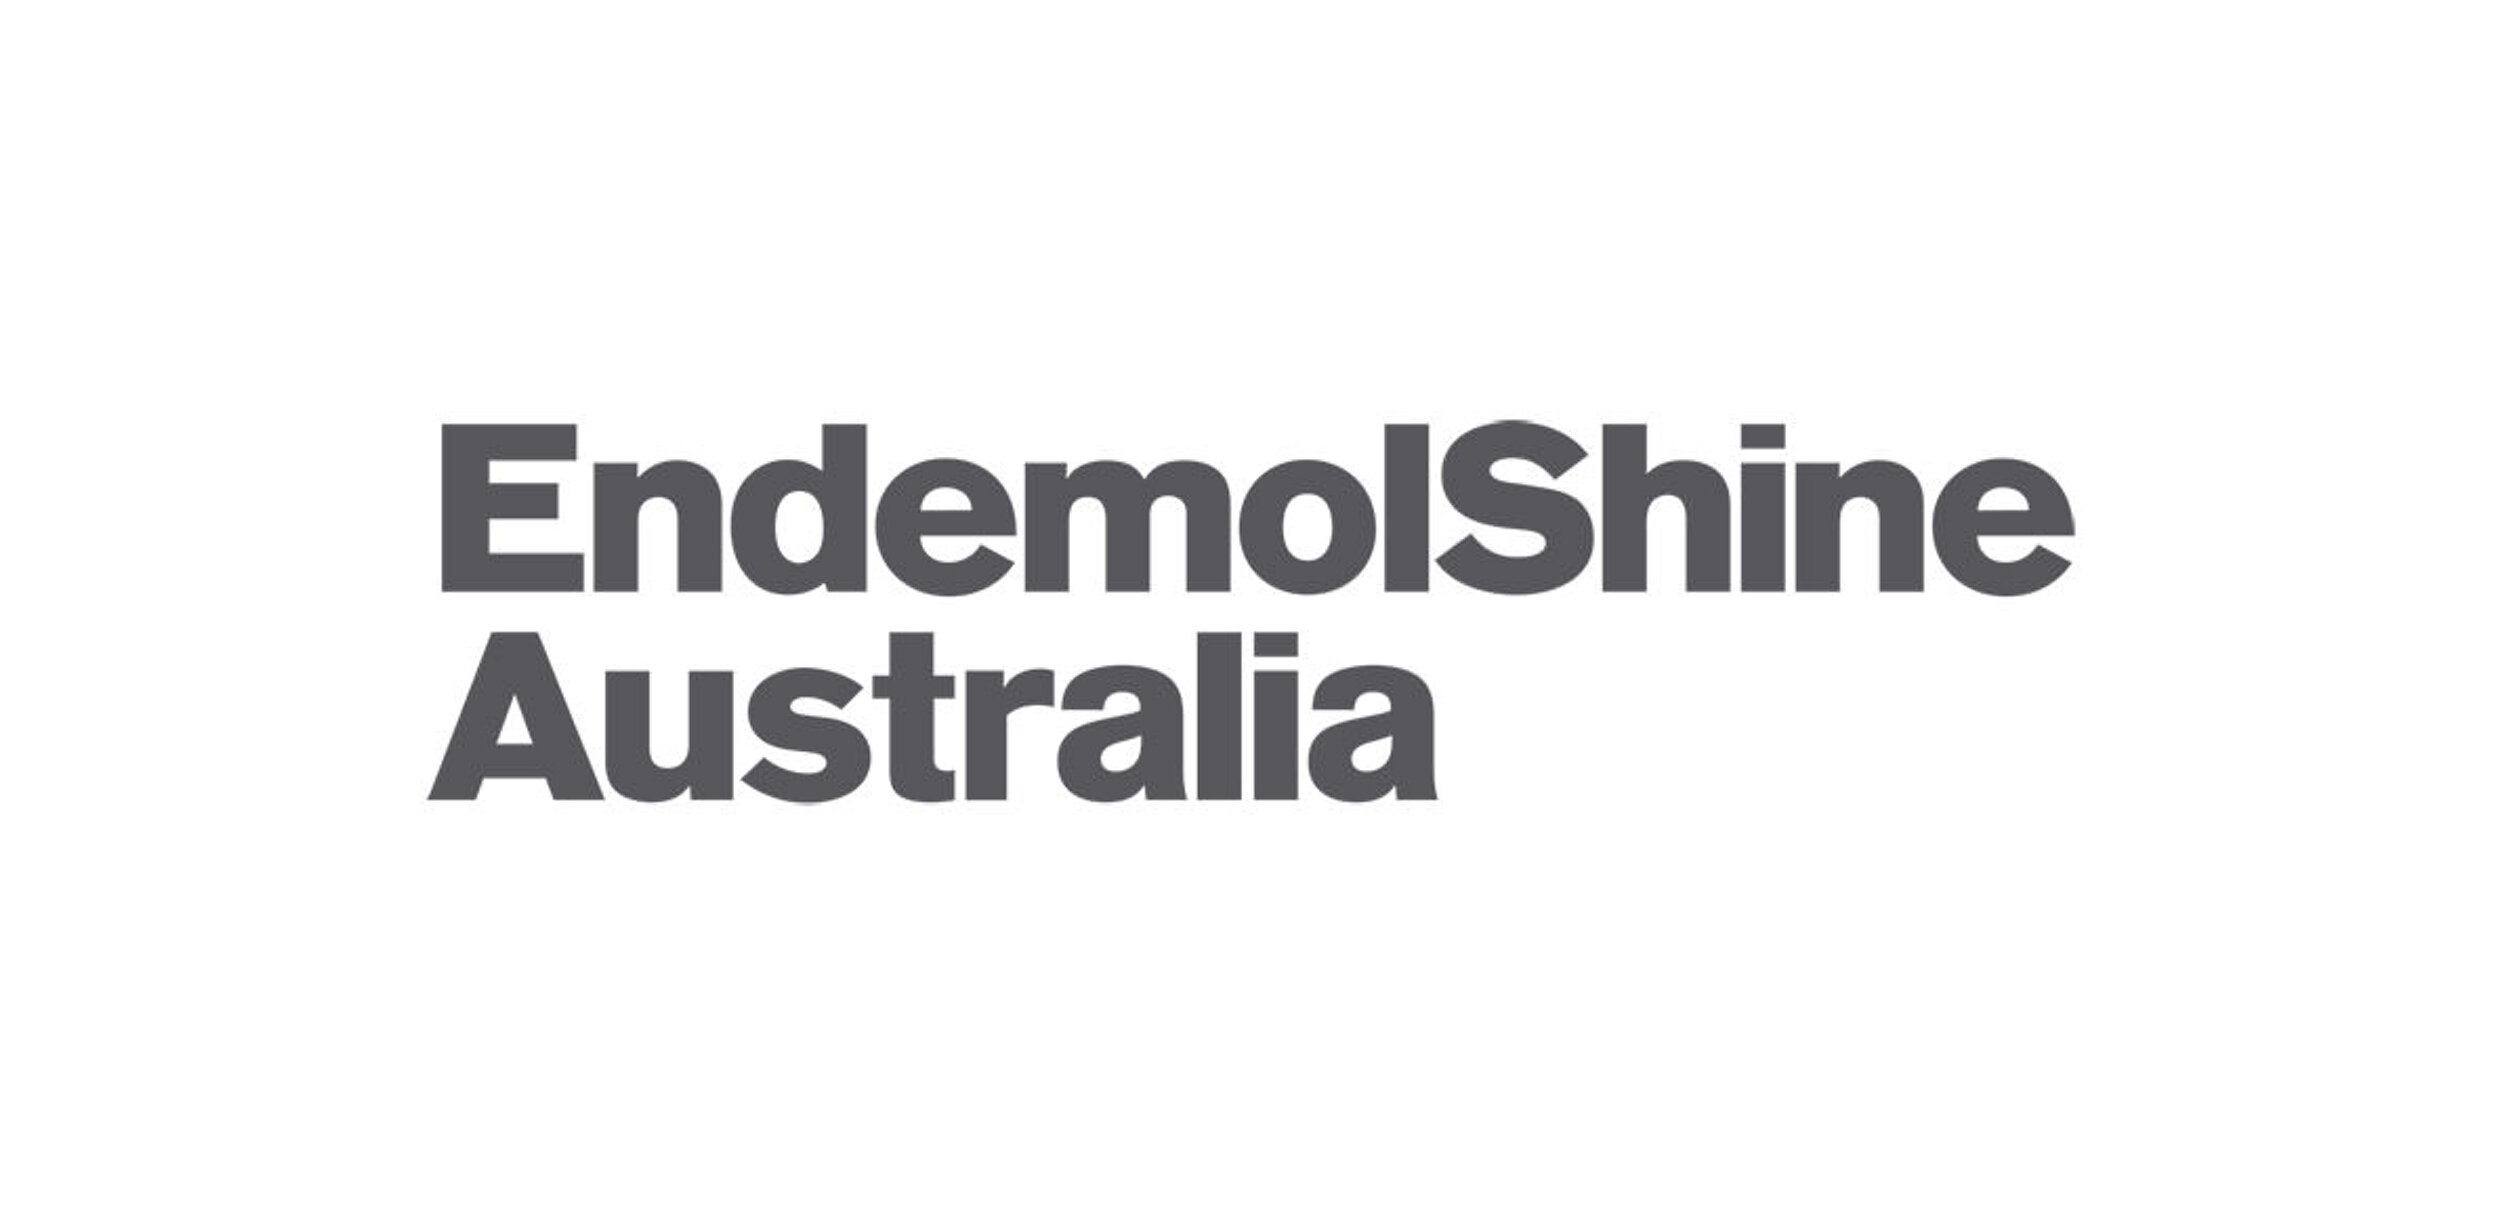 Endemol Shine Australia